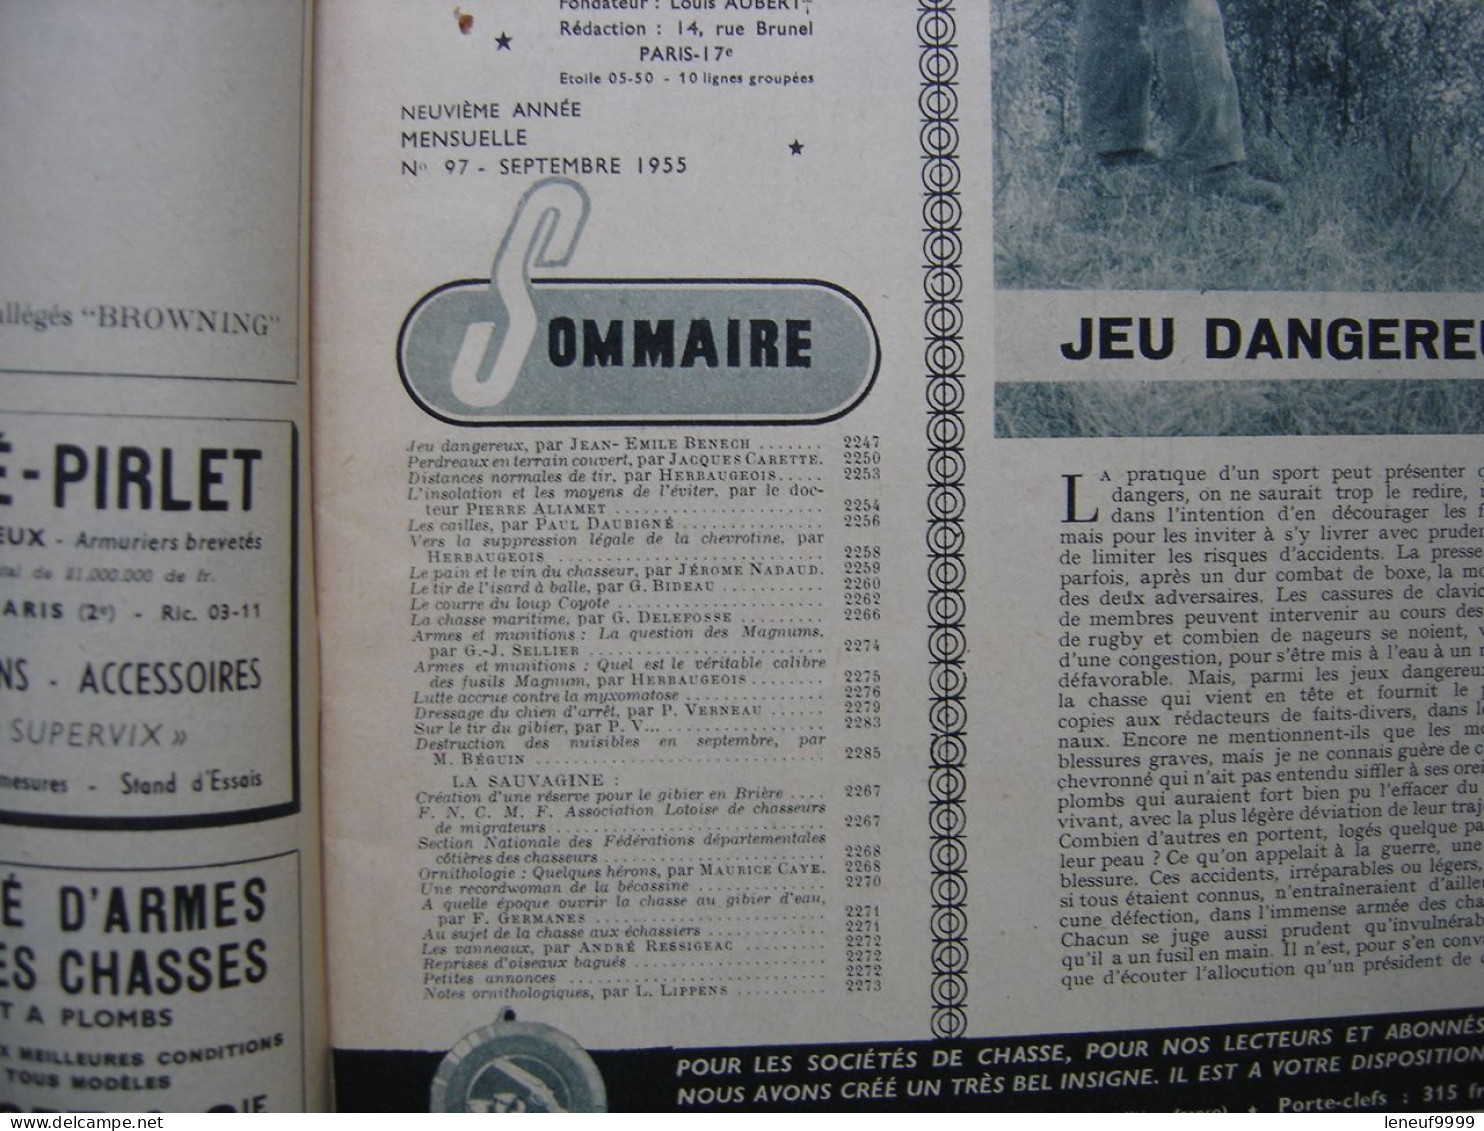 3 Magazines REVUE NATIONALE DE LA CHASSE Le Provencal 9/10-1955 ET 1/1956 - Chasse/Pêche